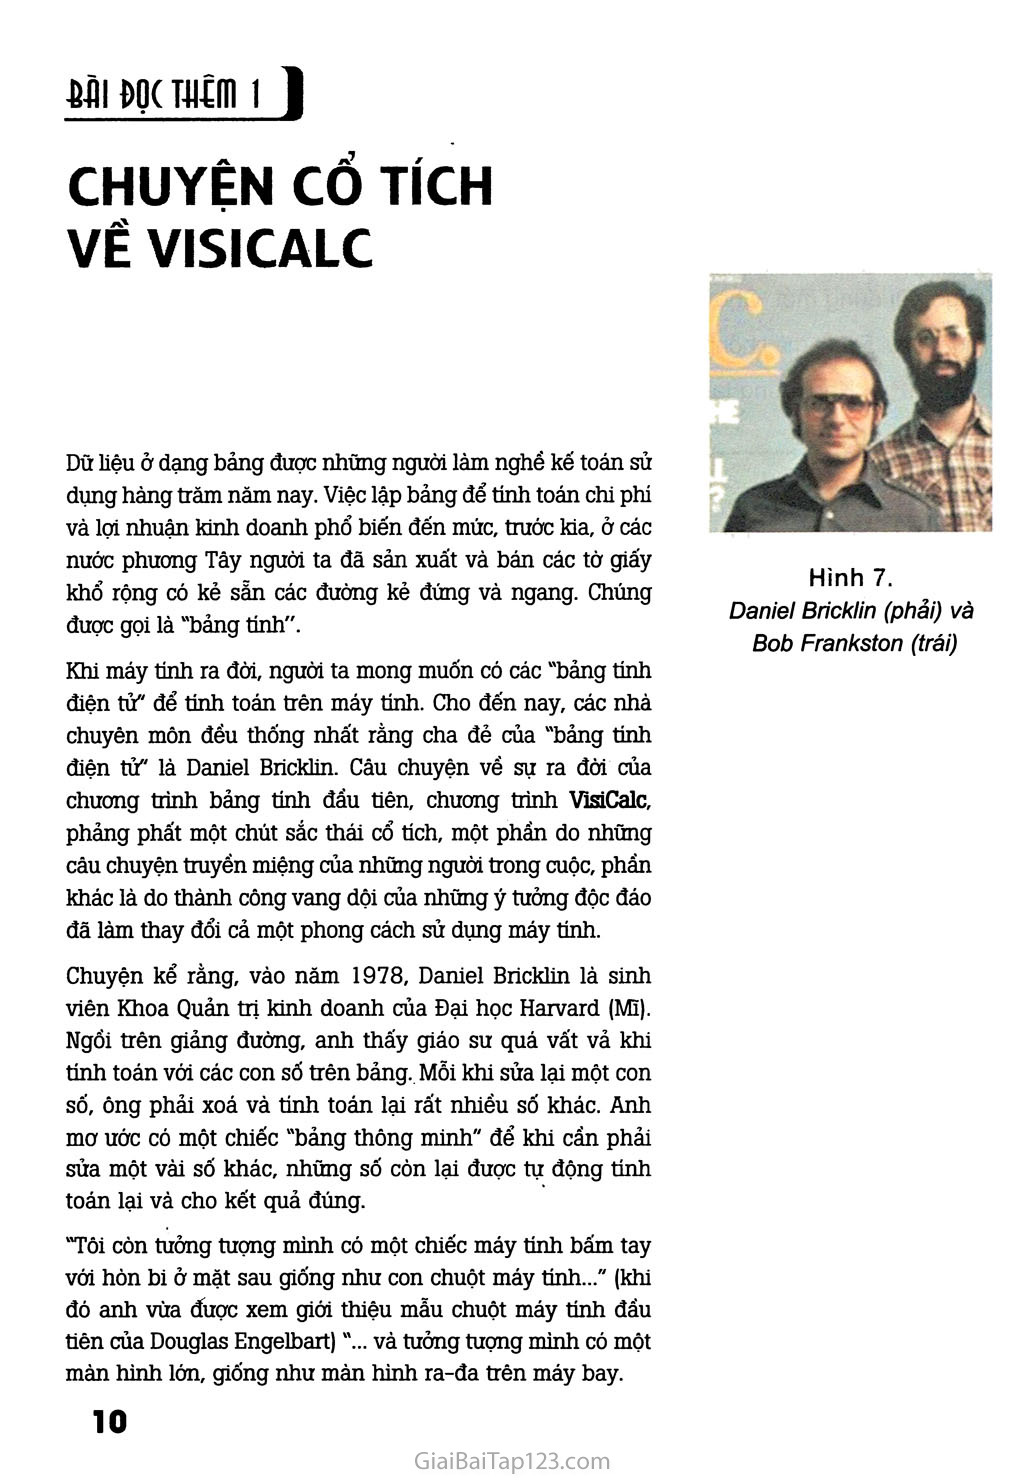 Bài đọc thêm 1. Chuyện cổ tích về VisiCalc trang 1